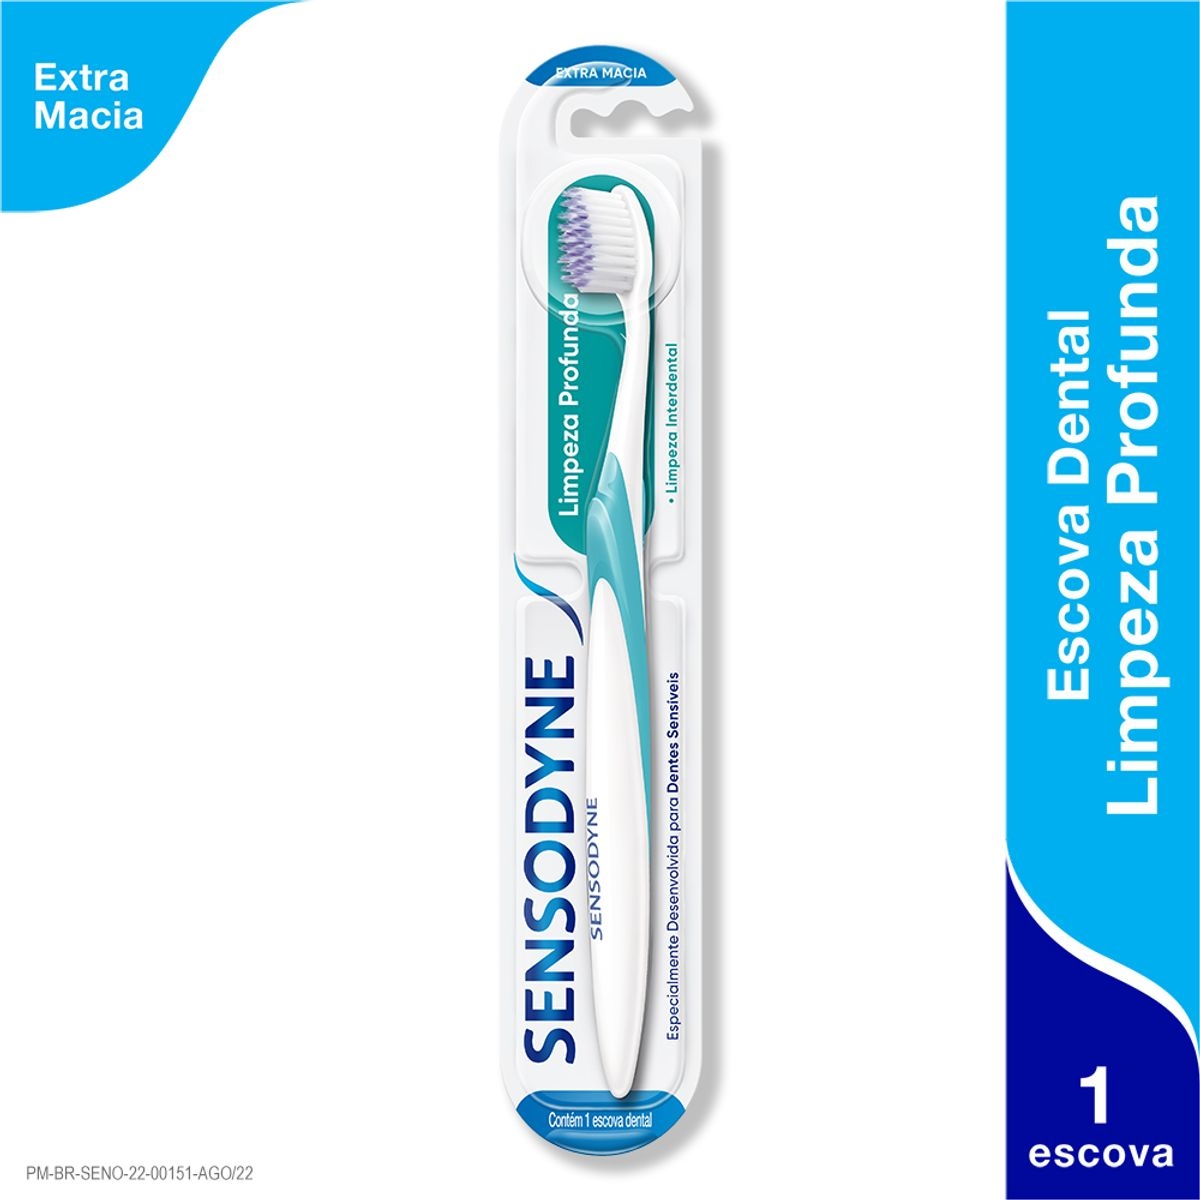 Escova de Dente Sensodyne Limpeza Profunda Extra Macia com 1 unidade